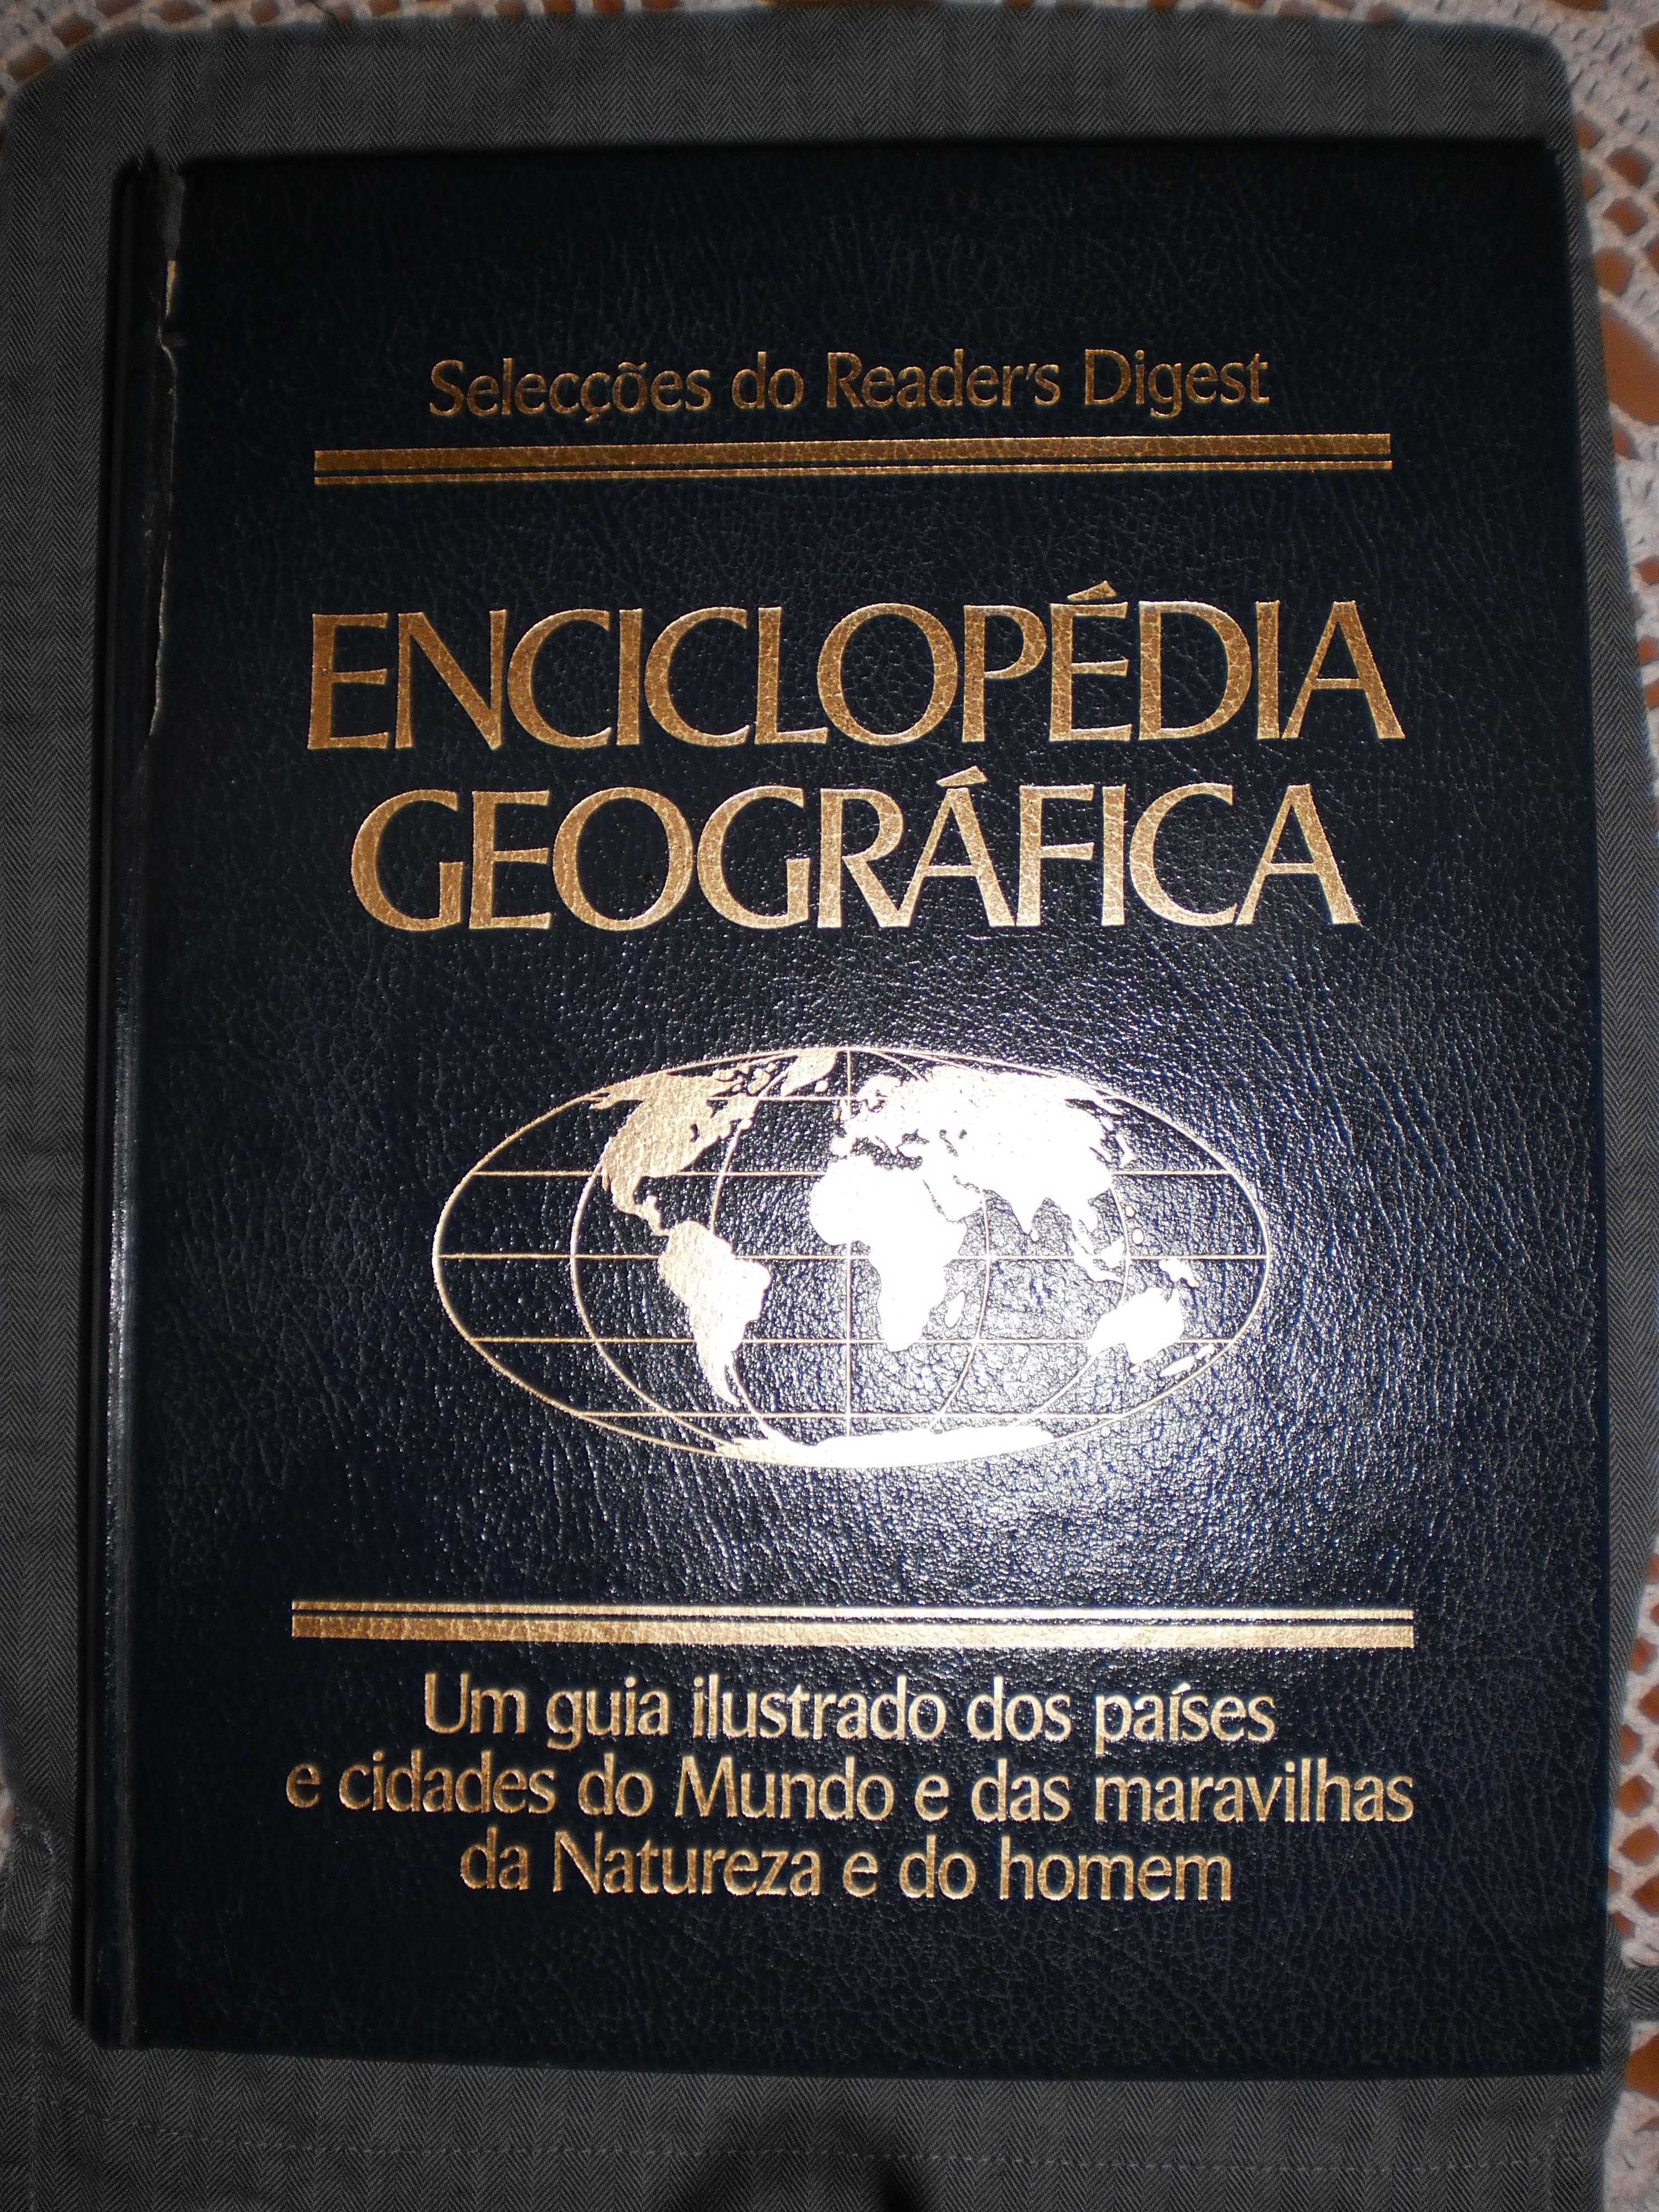 Enciclopédia Geográfica Seleções Reader's Digest